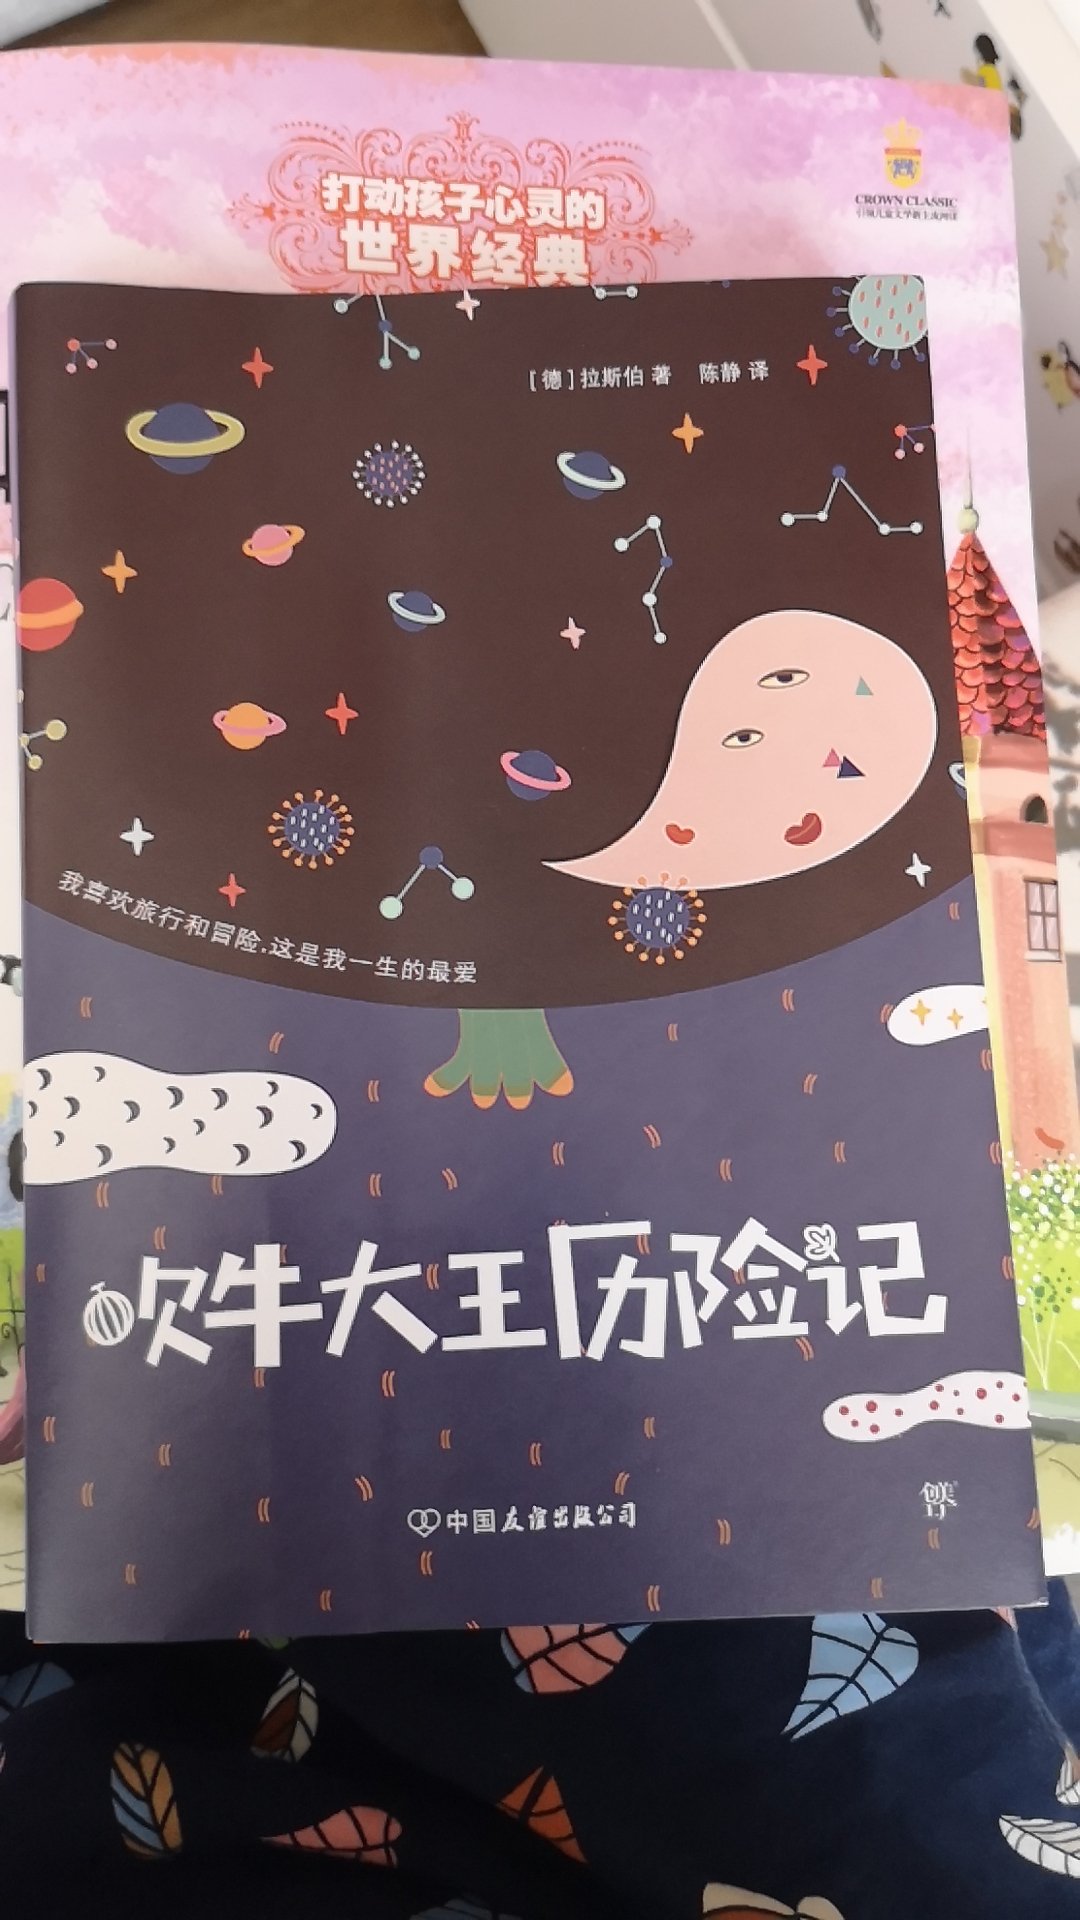 小孩子班级上要求统一阅读的书目，可惜了，这个出版社的译本翻译的很差，像是~翻译出来的，没有什么文采，又买了中国少年儿童出版社的版本。